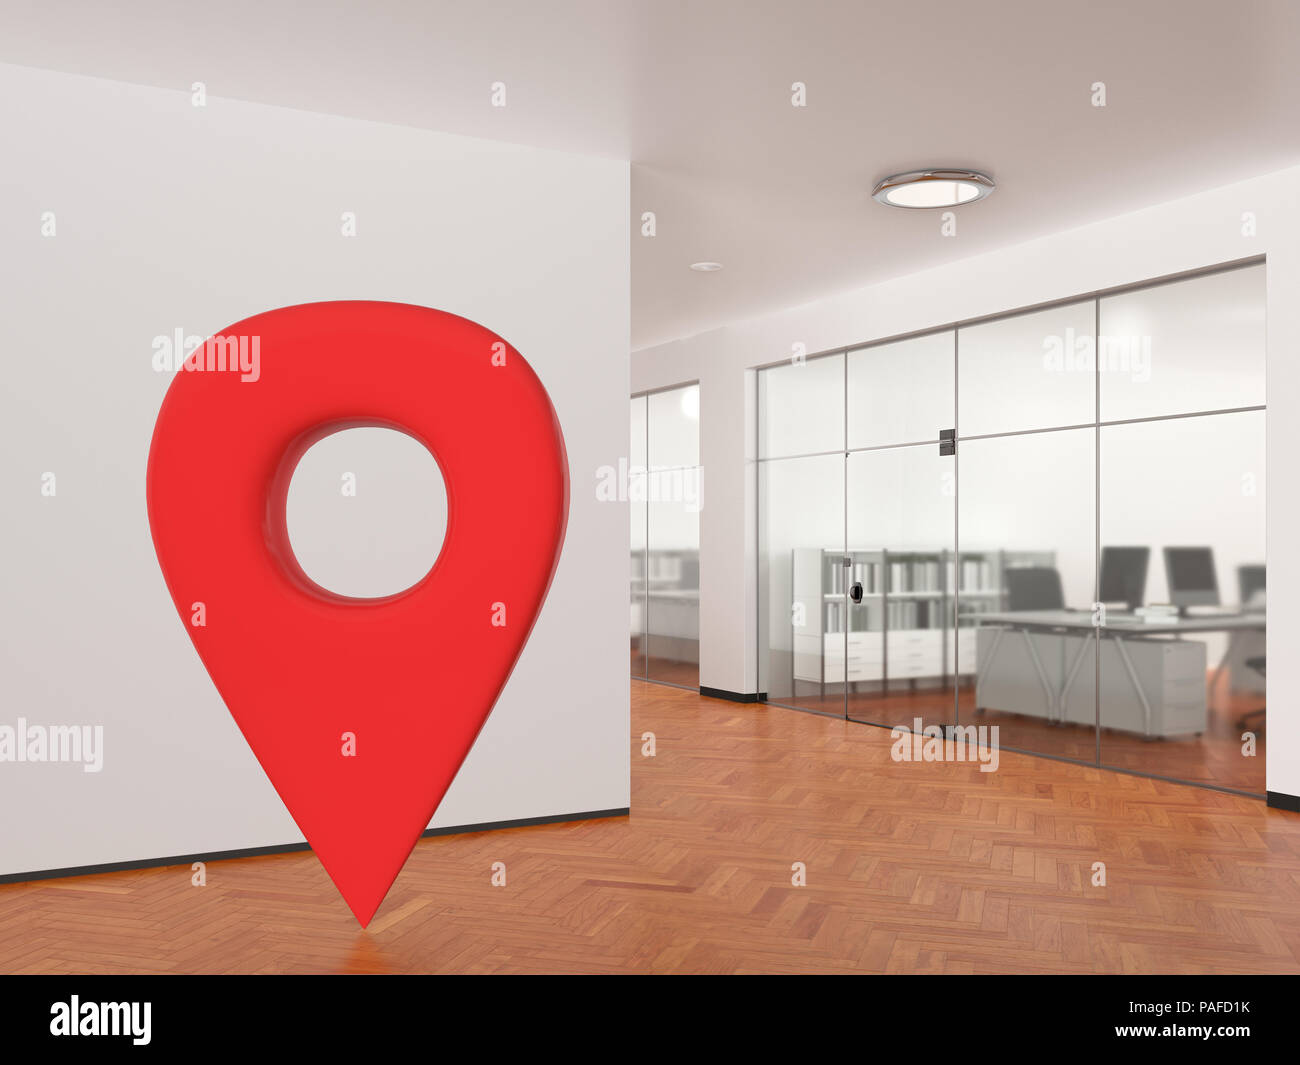 Emplacement de l'axe GPS geo tag navigation dans l'espace de bureaux vides dans un bâtiment moderne. 3d illustration Banque D'Images